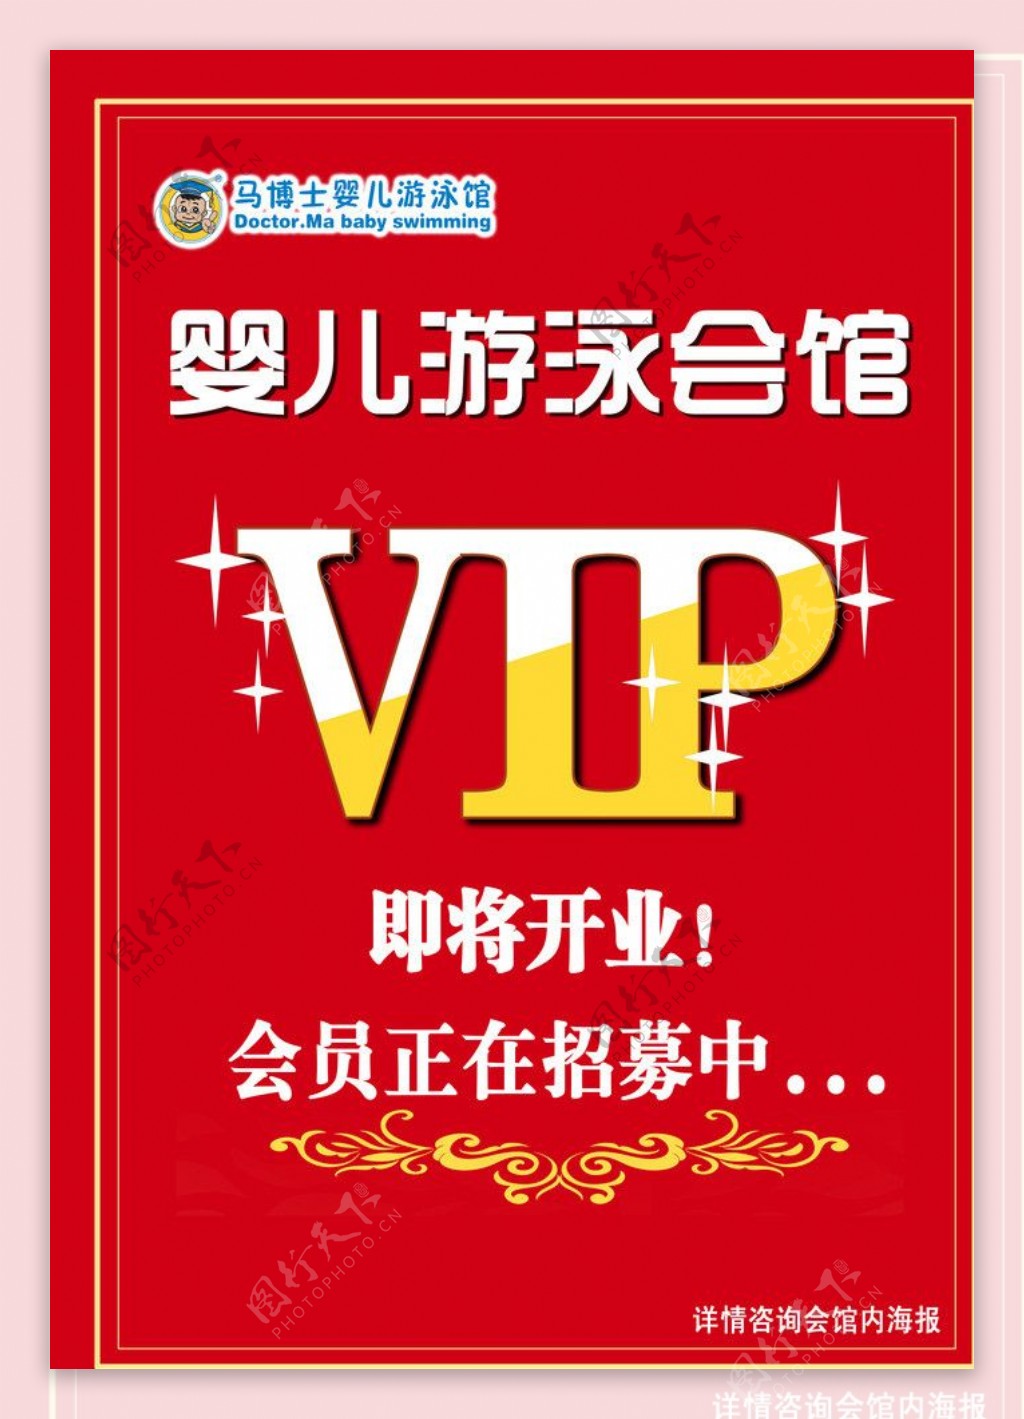 VIP招募宣传页图片